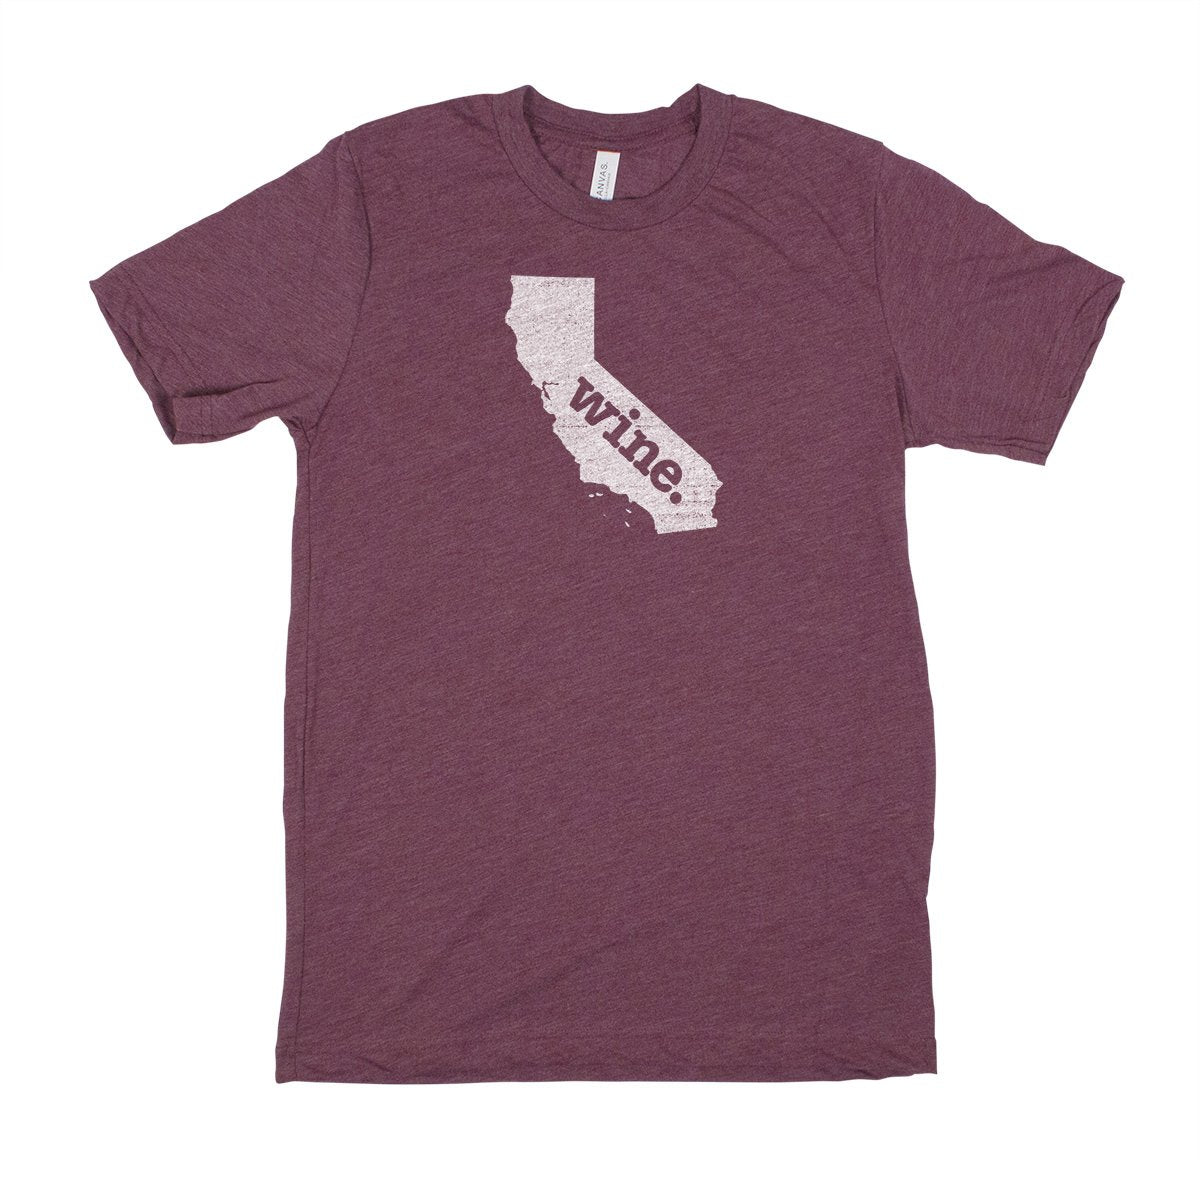 run. Men's Unisex T-Shirt - New Jersey